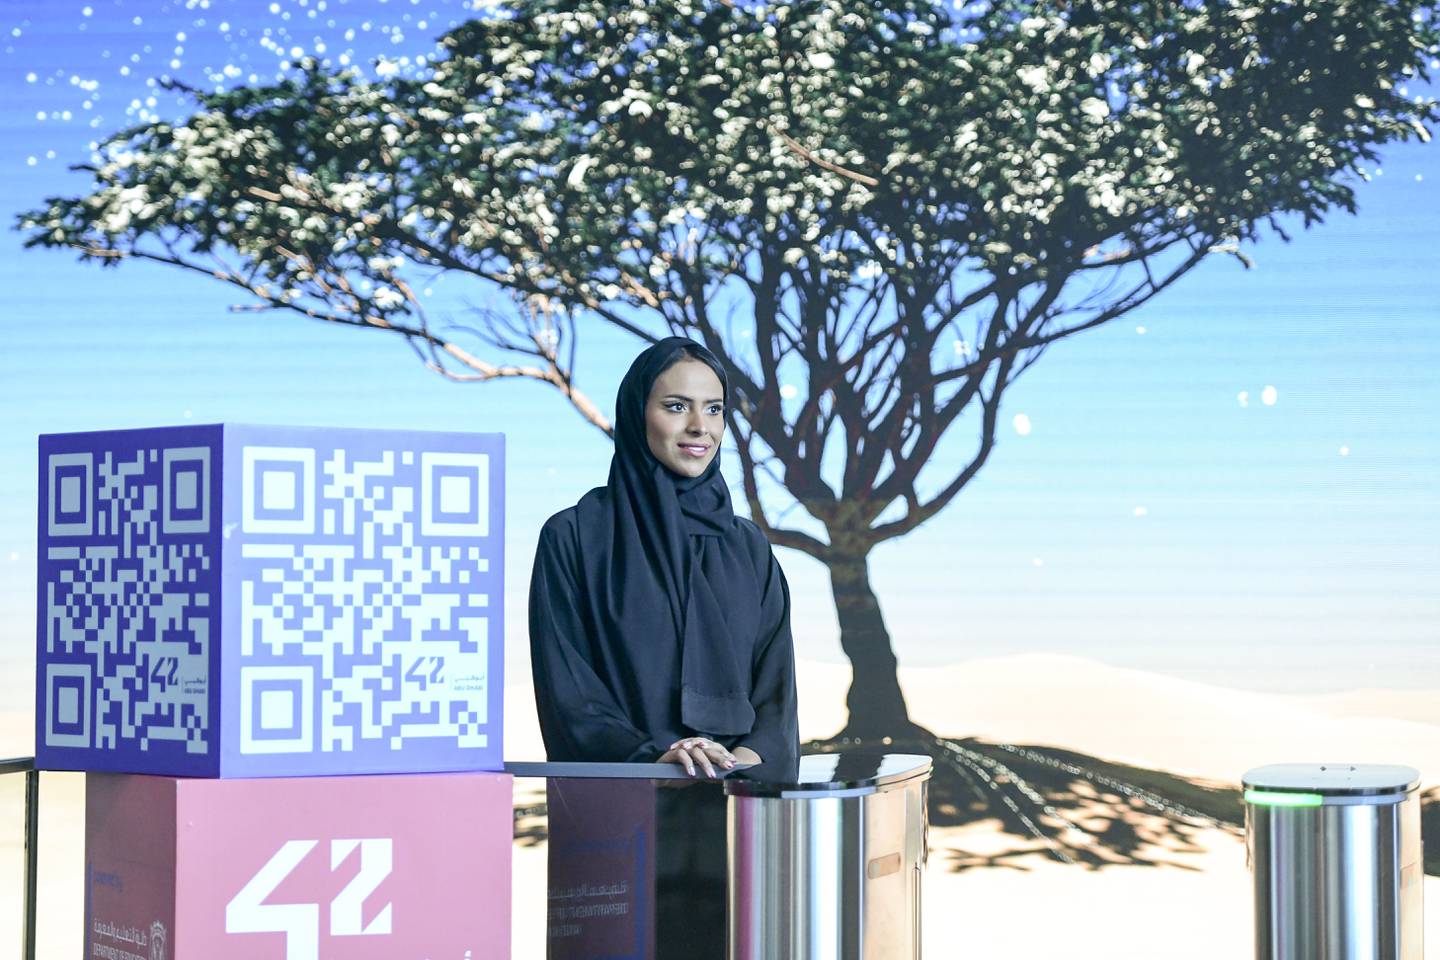 Hamda Alwahedi, Studentin an der 42 Abu Dhabi, wurde als Coding-Botschafterin ausgewählt, um sich für den digitalen Antrieb der VAE einzusetzen.  Khushnum Bhandari / Der Nationale